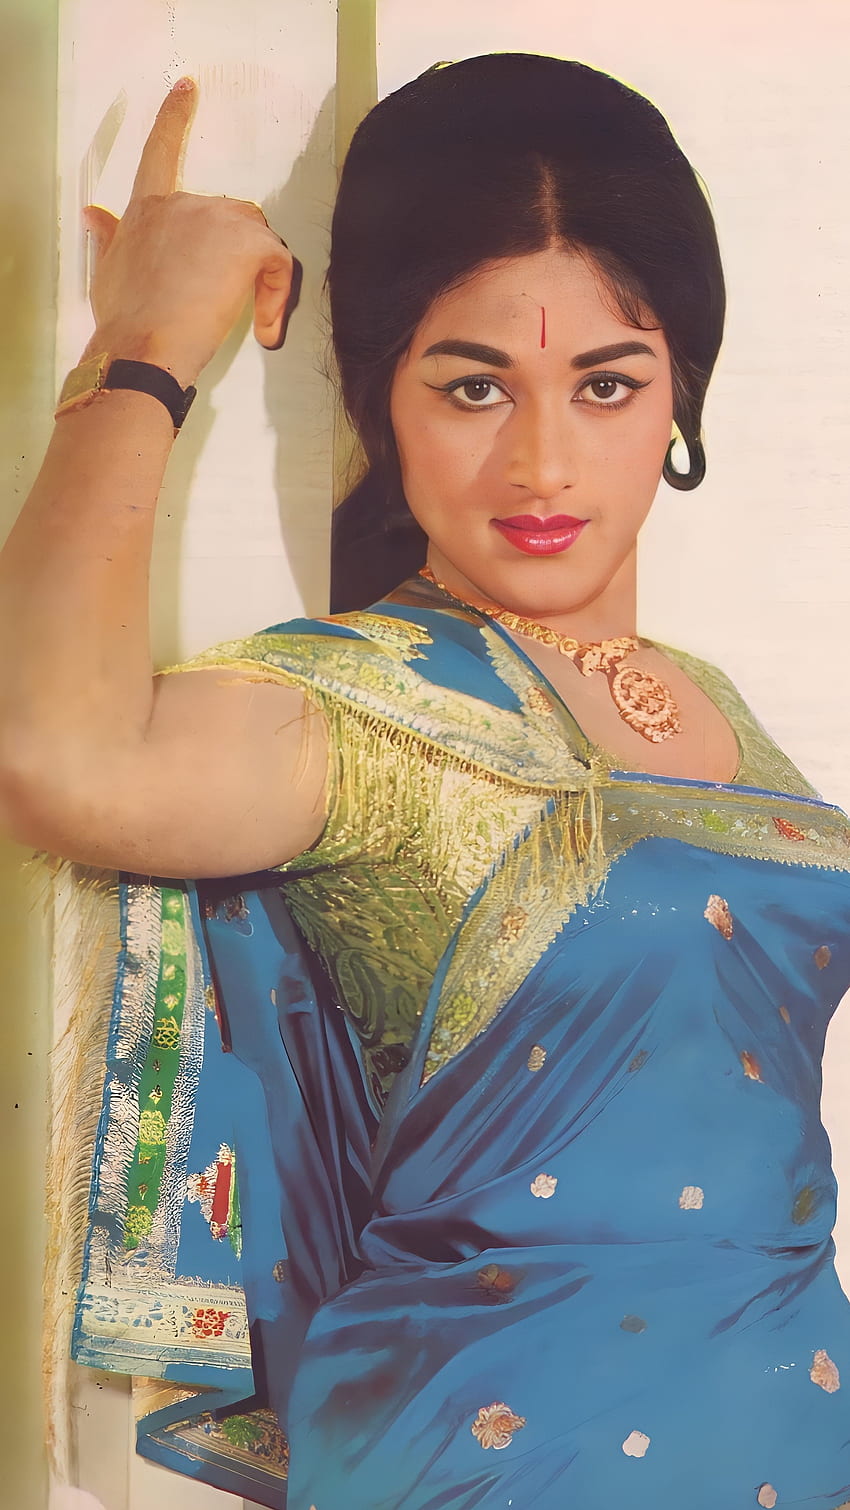 1920x1080px, 1080P Free download | Bharathi, vintage actress, kannada ...